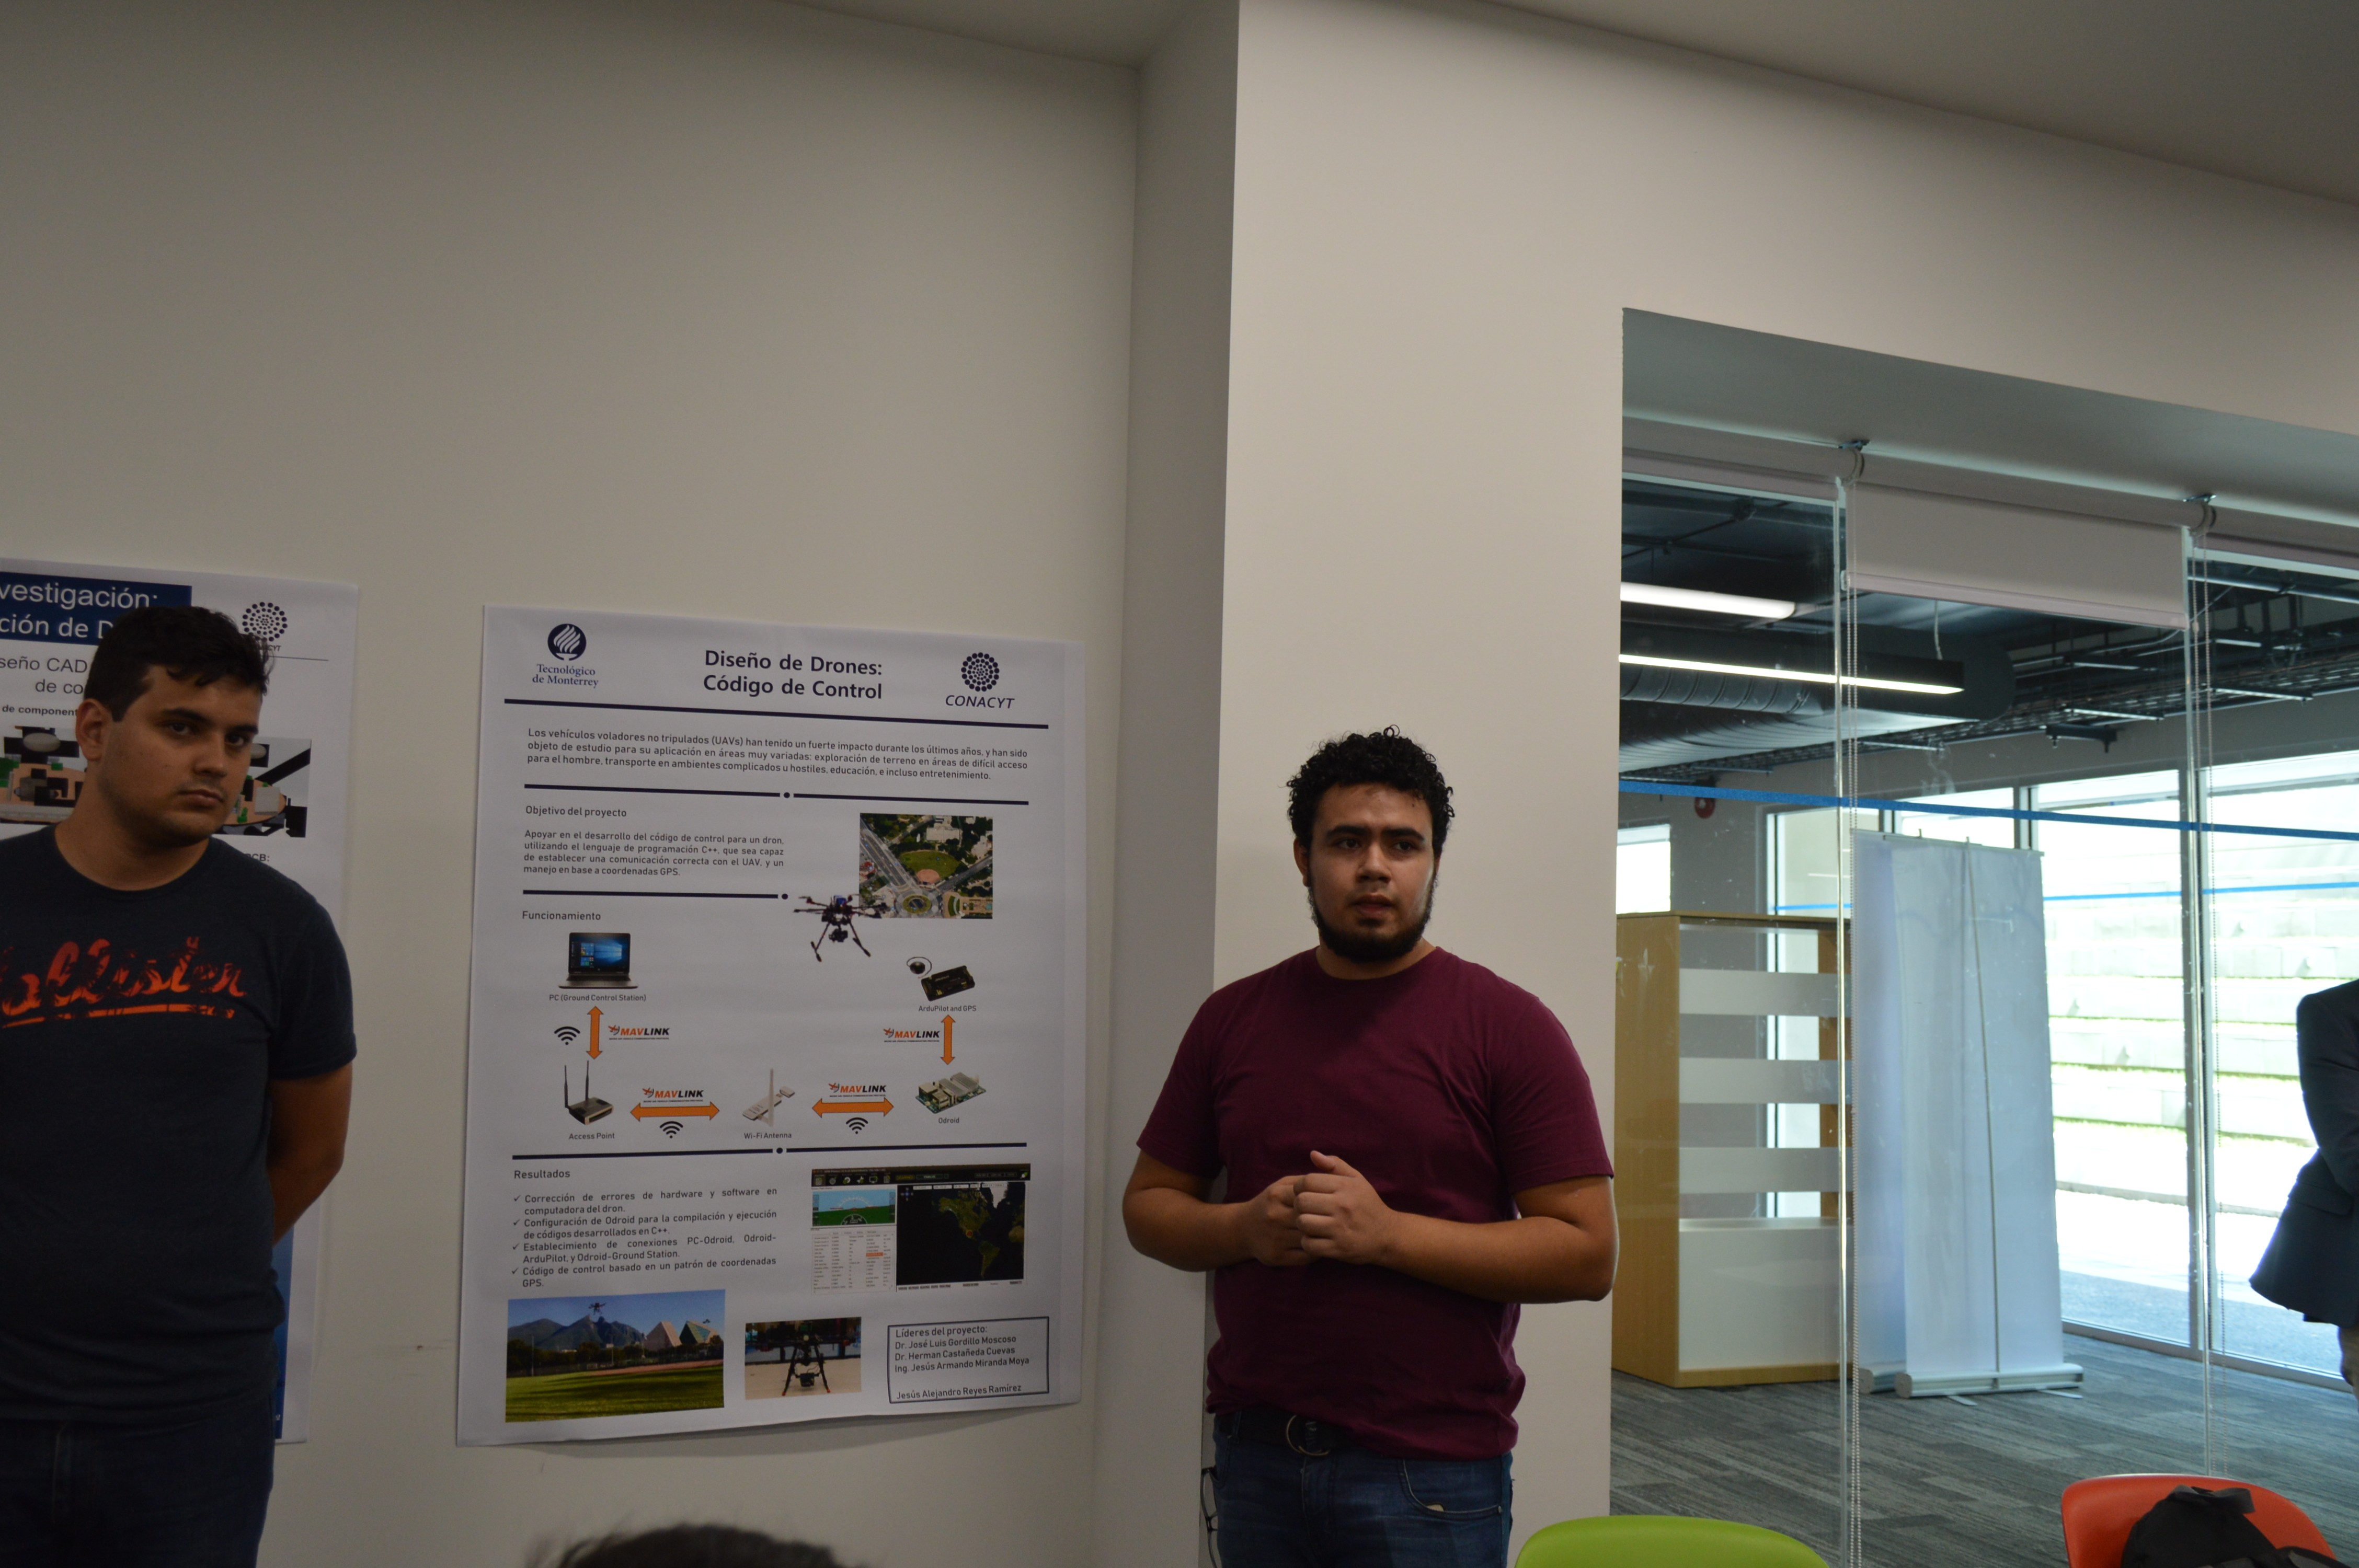 Jesús Alejandro Pérez con su proyecto "Diseño de drones: código de control"